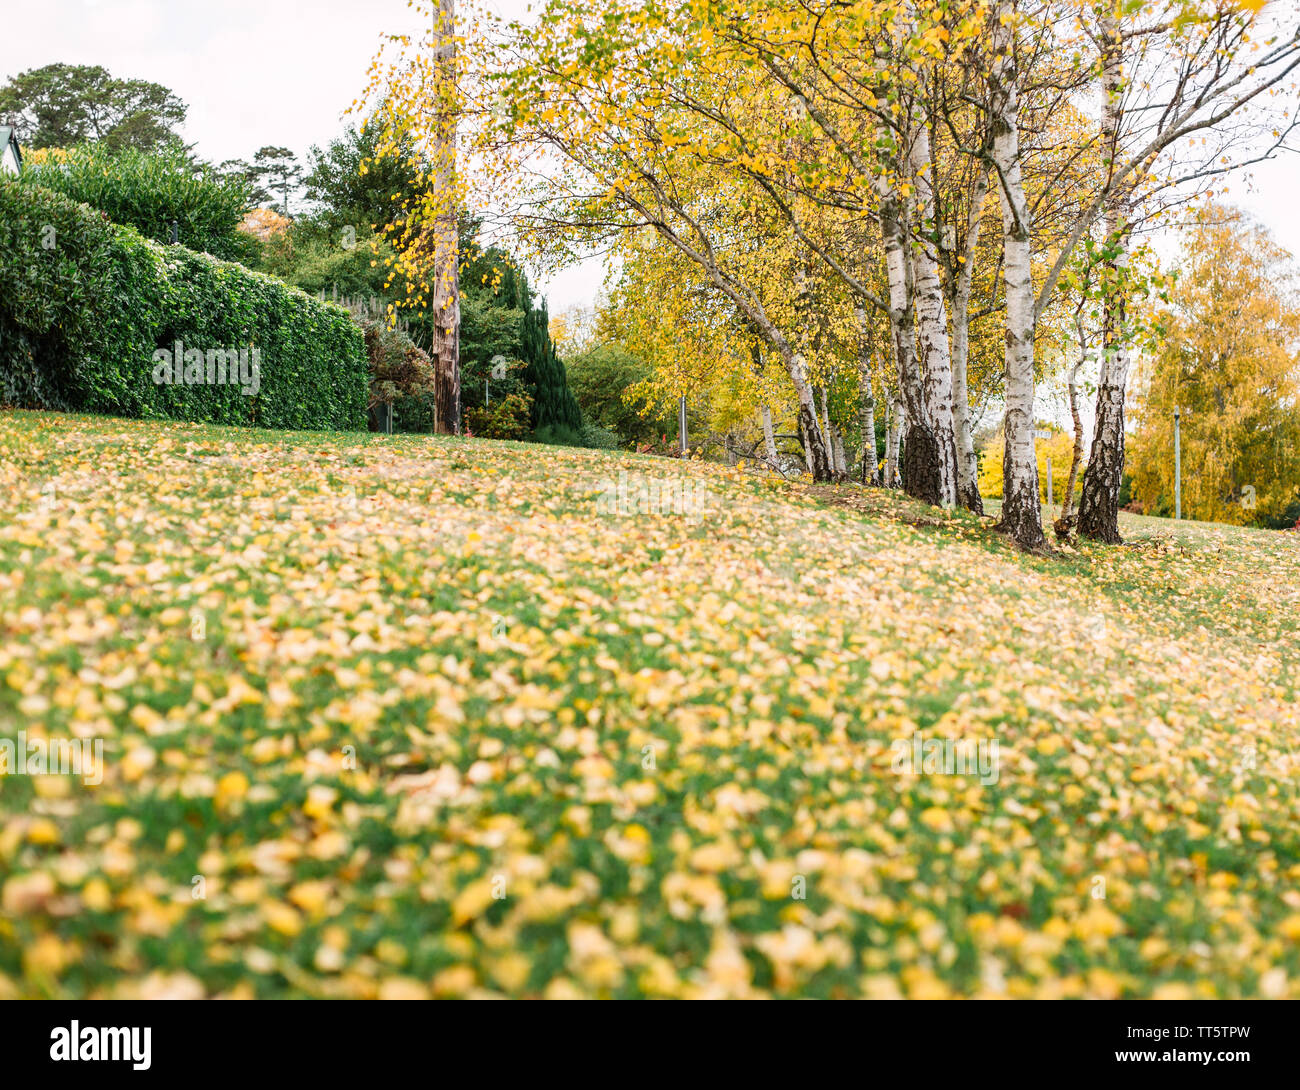 Striscia di natura con più alberi di betulla con foglie di giallo e con foglie di giallo caduti sull'erba verde Foto Stock